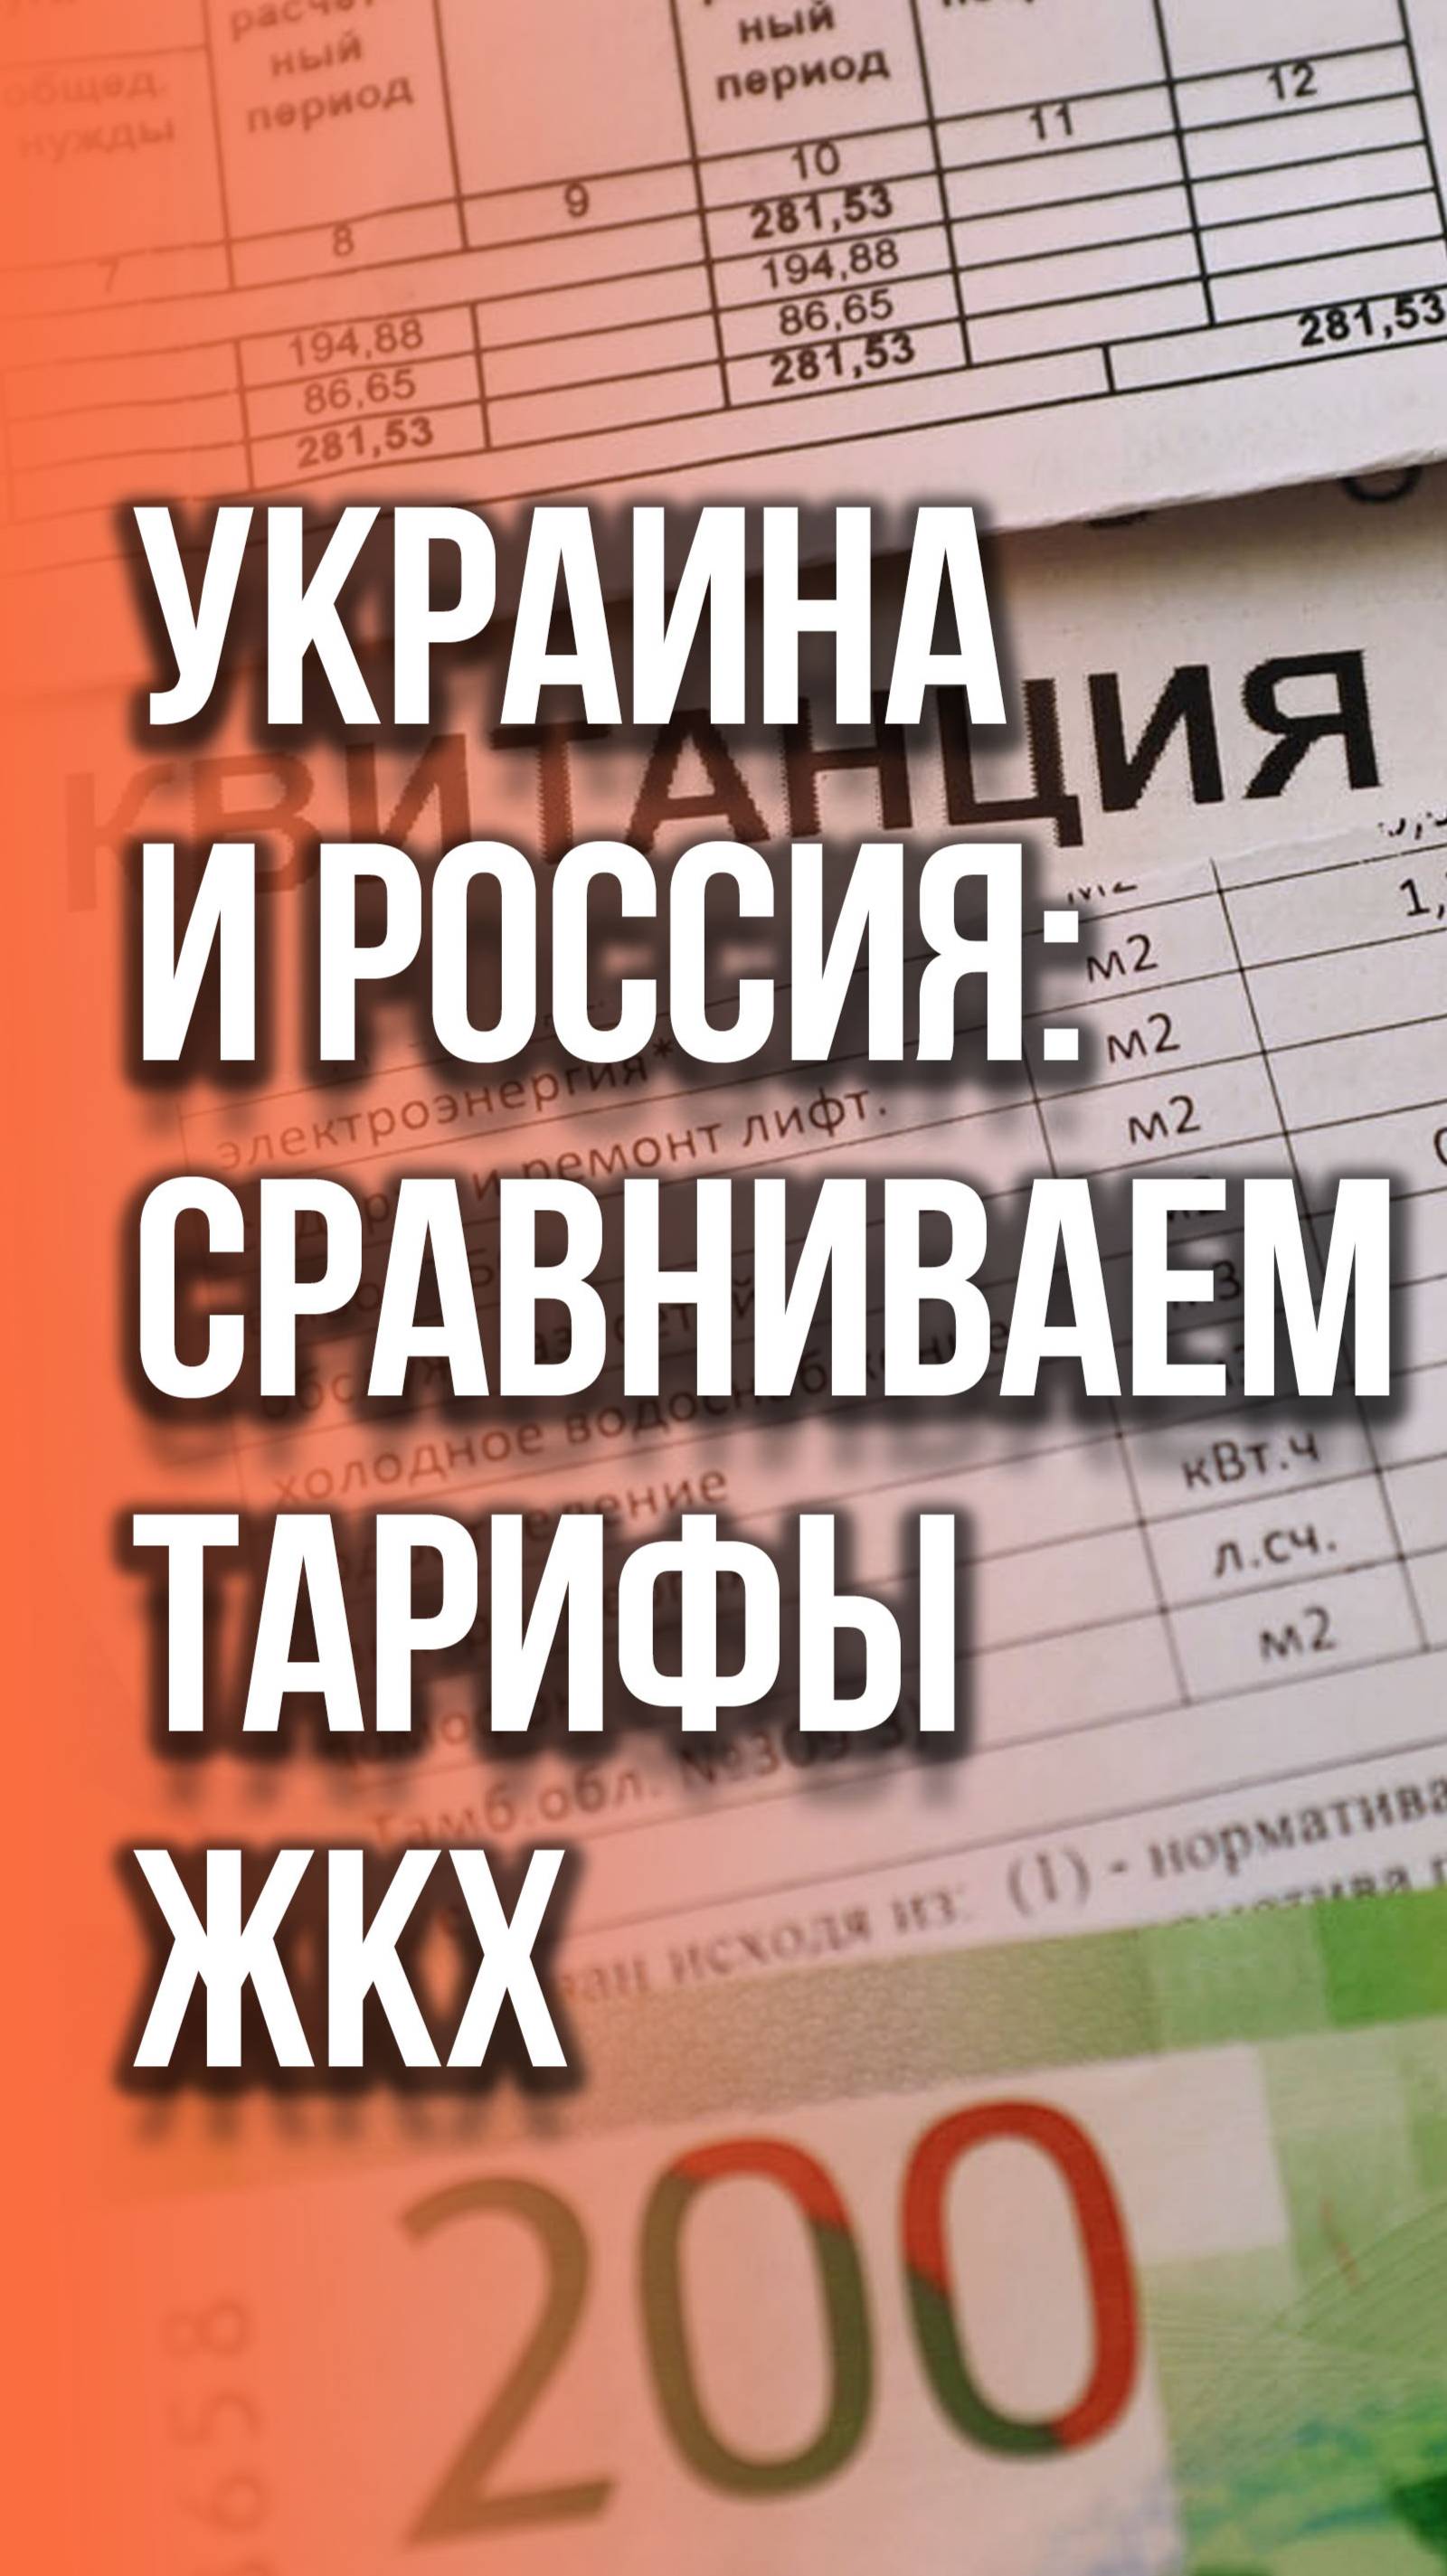 Шок-контент для Украины! Сколько платят за коммунальные услуги в России. Сравните с украинскими